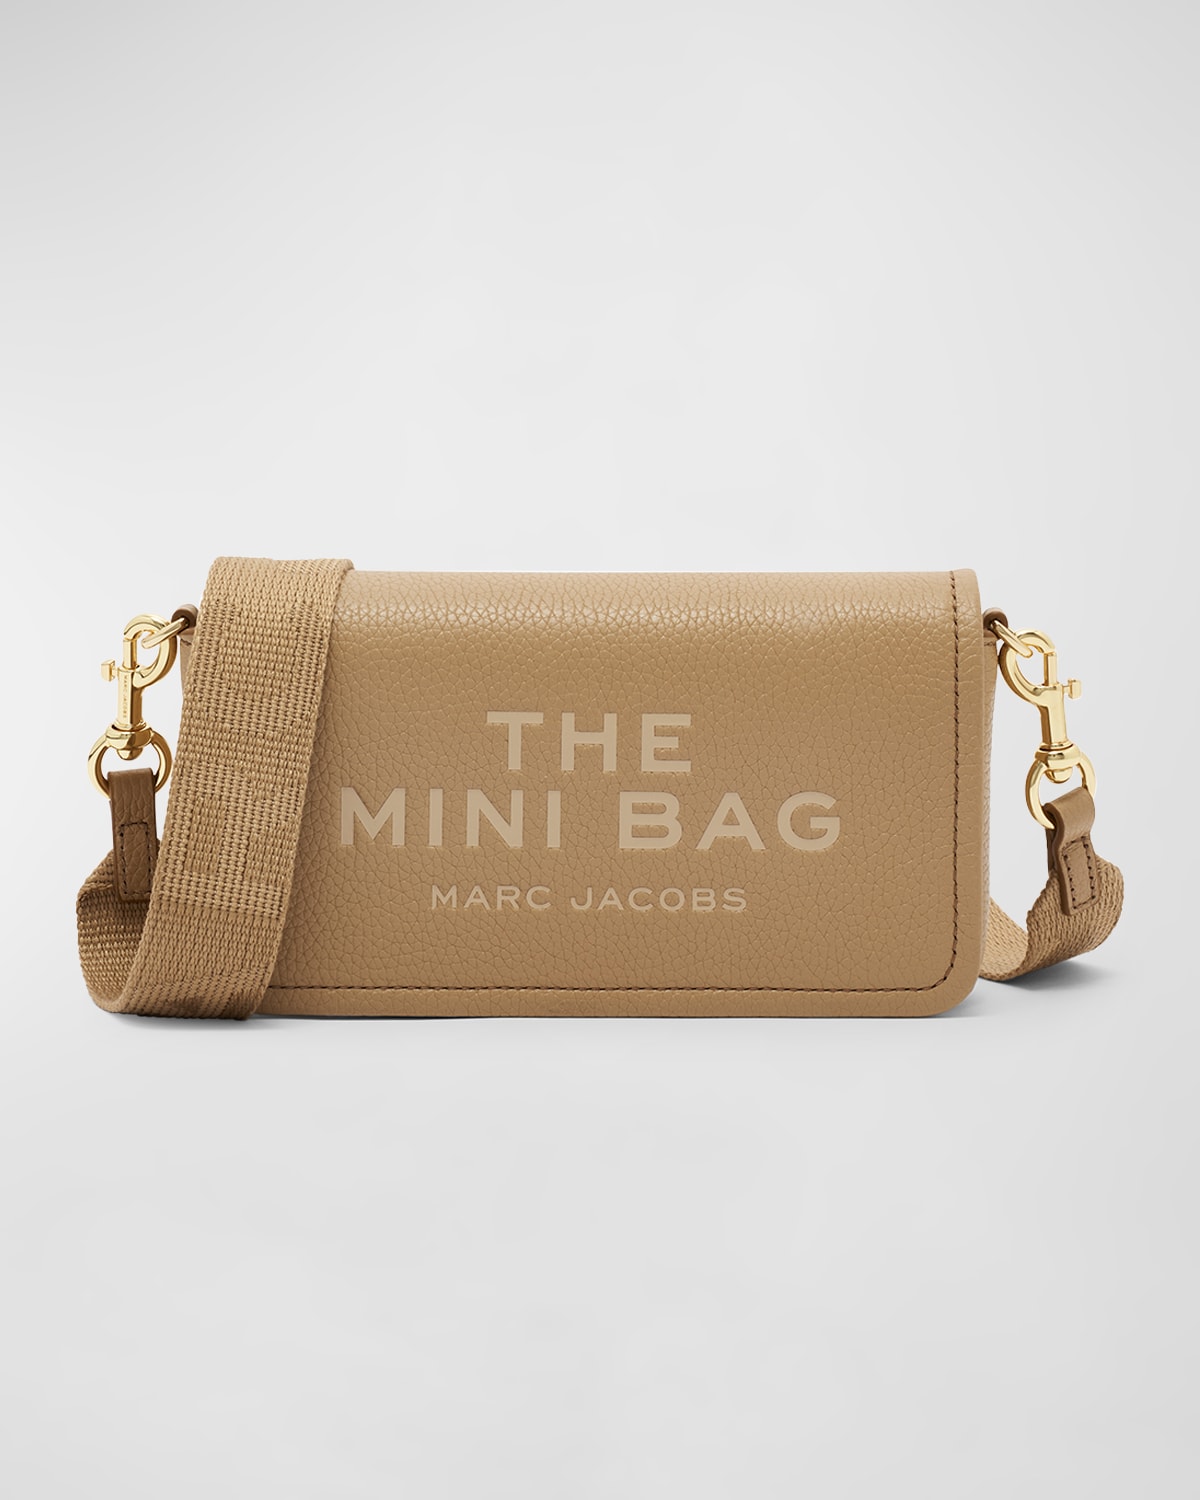 The Leather Mini Bag